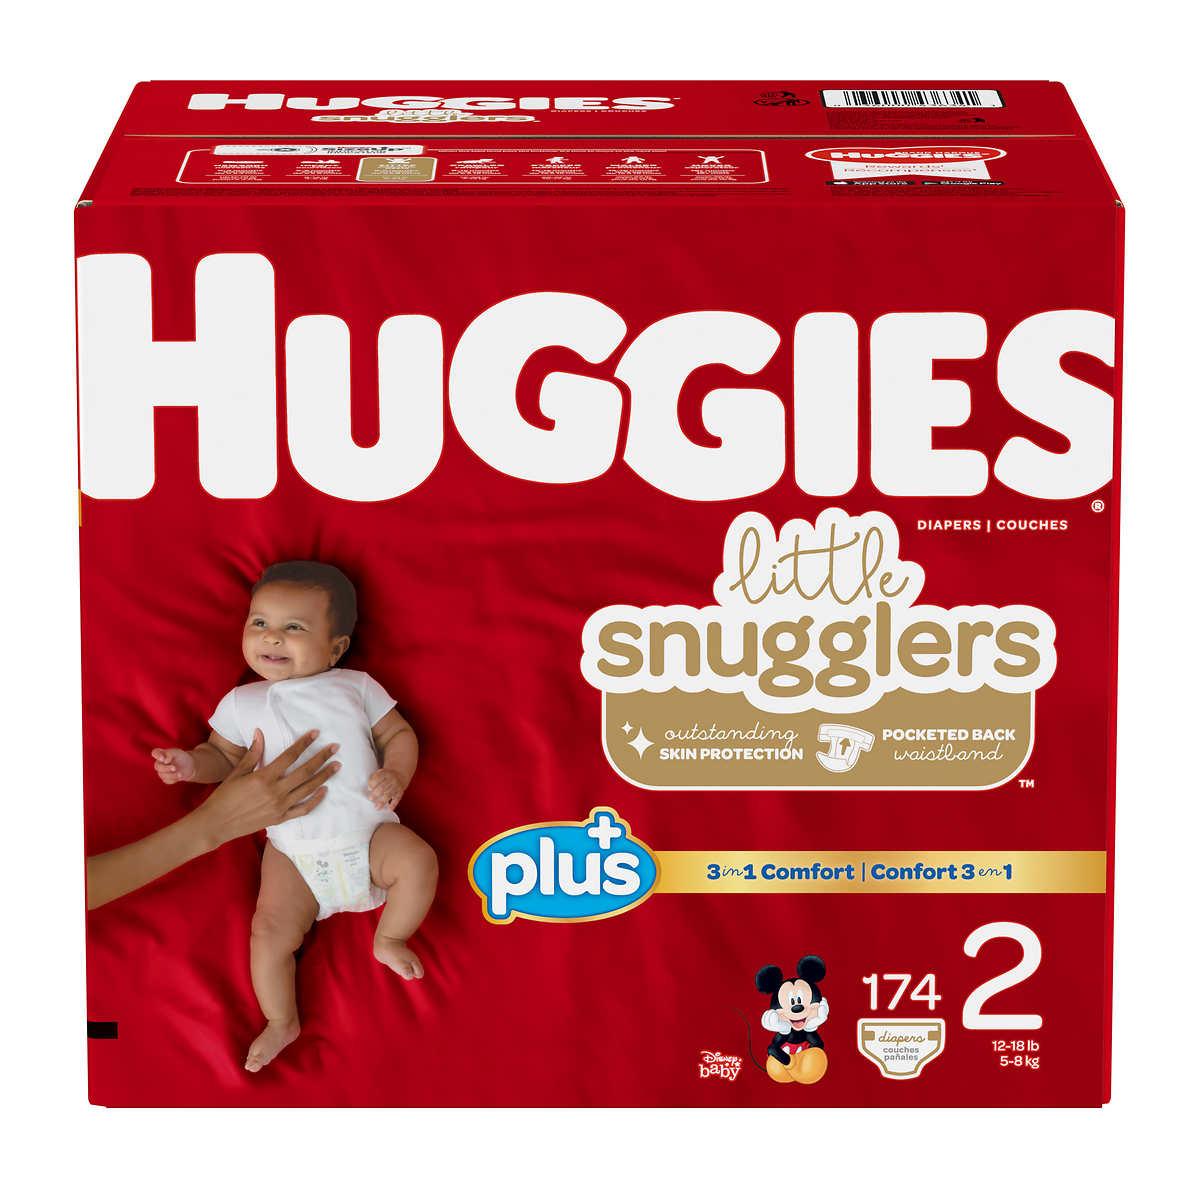 Huggies Couches pour bébés Little Snugglers, taille 2, 148 unités - 148 ea